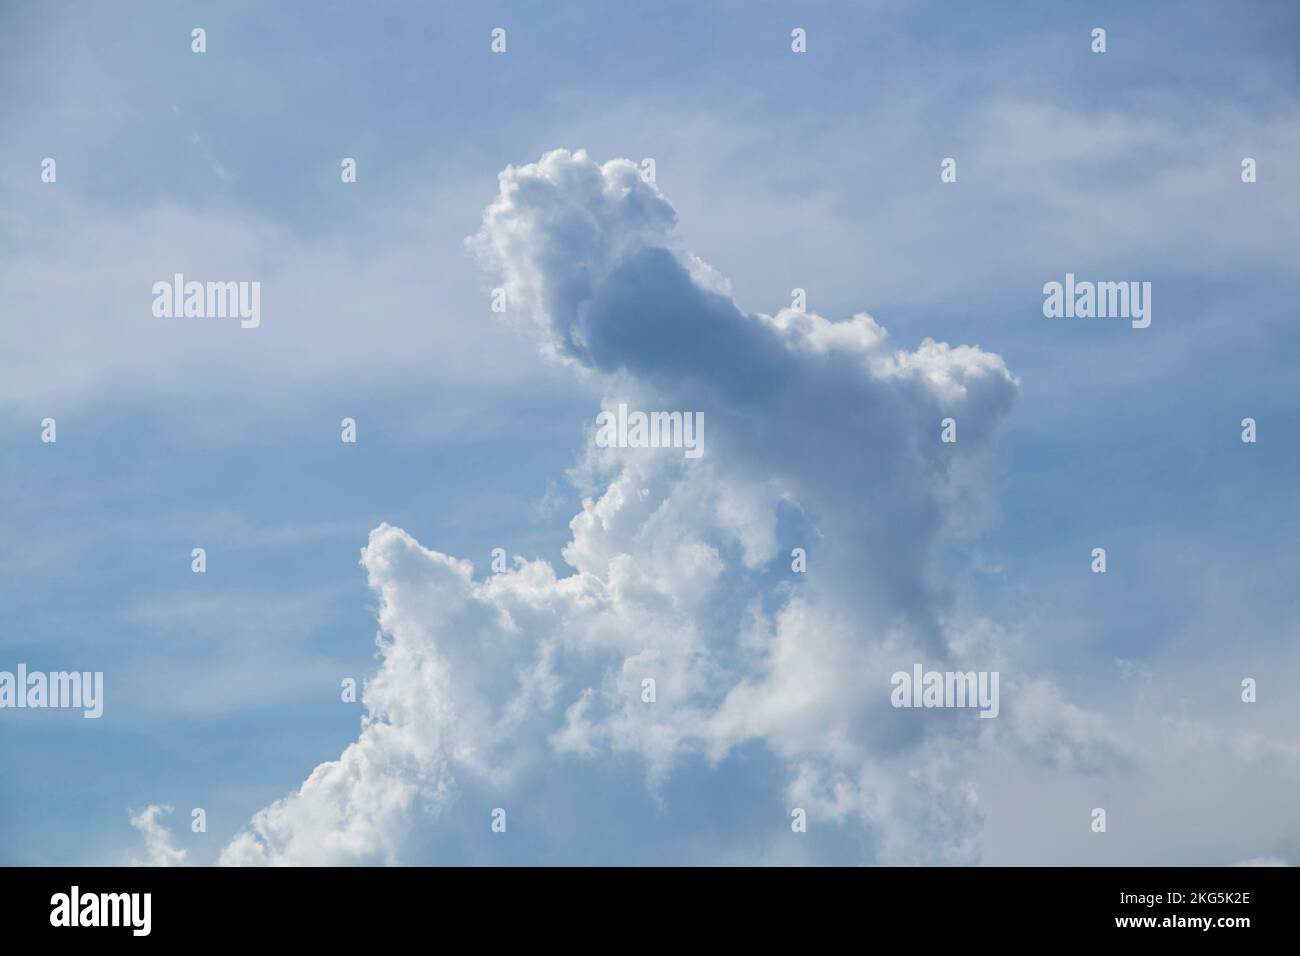 Wolkiger Himmel - Hintergrund - Textur e - seltsame Wolkenformationen Stockfoto